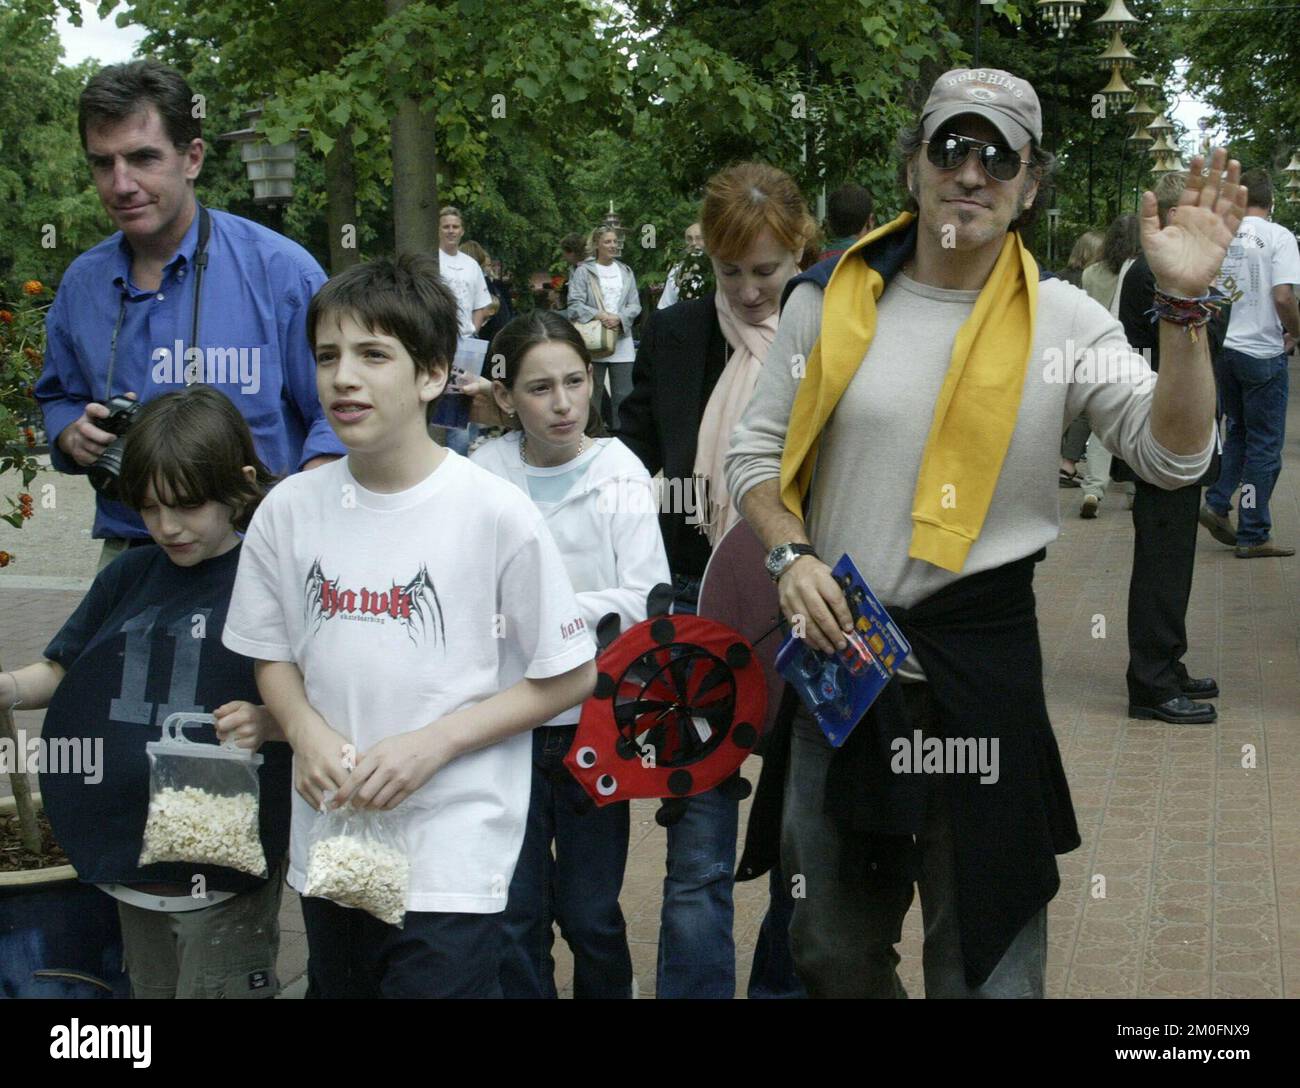 PA PHOTOS/POLFOTO - Royaume-Uni SEULEMENT: Un Bruce Springsteen très détendu a apprécié sa journée à Tivoli. Il a amené sa femme Patti Scialfa et leurs enfants au parc d'attractions populaire au cœur de Copenhague. En portant une casquette et un appareil photo Leica sur son épaule, il ressemblait à n'importe quel père du Tivoli. Banque D'Images